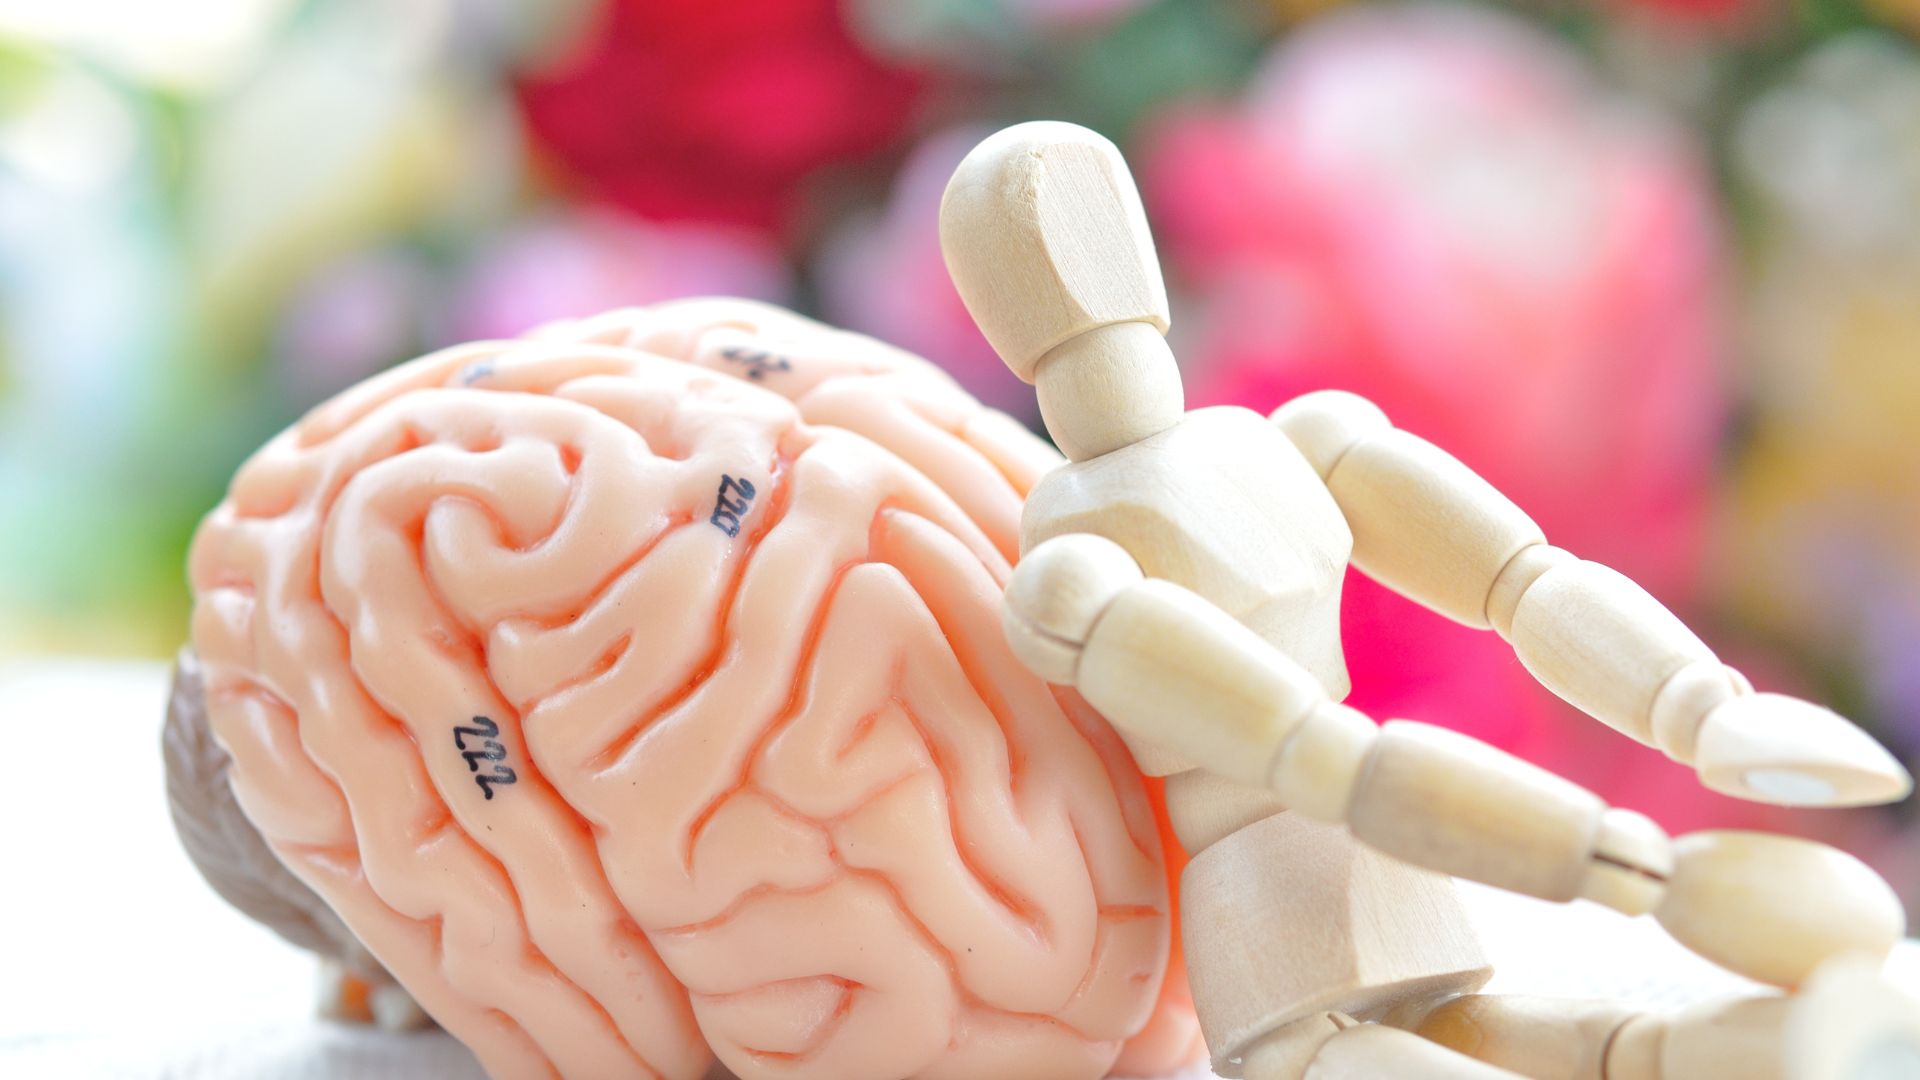 Leczenie neuroterapeutyczne pozwala wpływać na aktywność mózgu człowieka. Widoczne na zdjęciu modele przedstawiają właśnie mózg i człowieka.